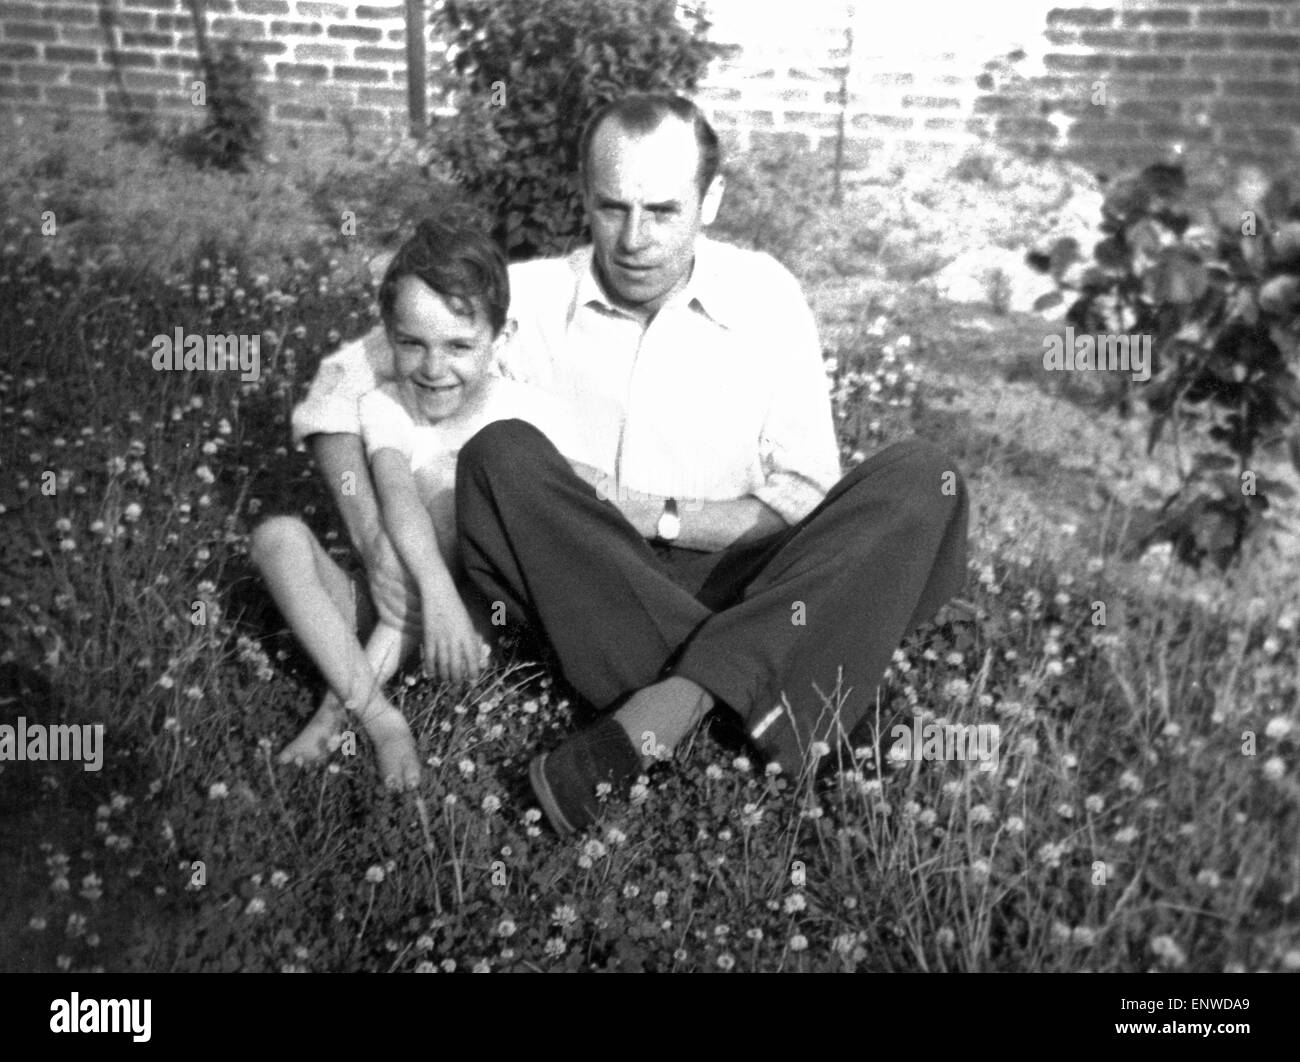 Negli anni cinquanta, Famiglia, padre e figlio seduti su un prato, embracement, uomo 35-45 anni, bambino, ragazzo da 4 a 6 anni, Werner, Josef Foto Stock